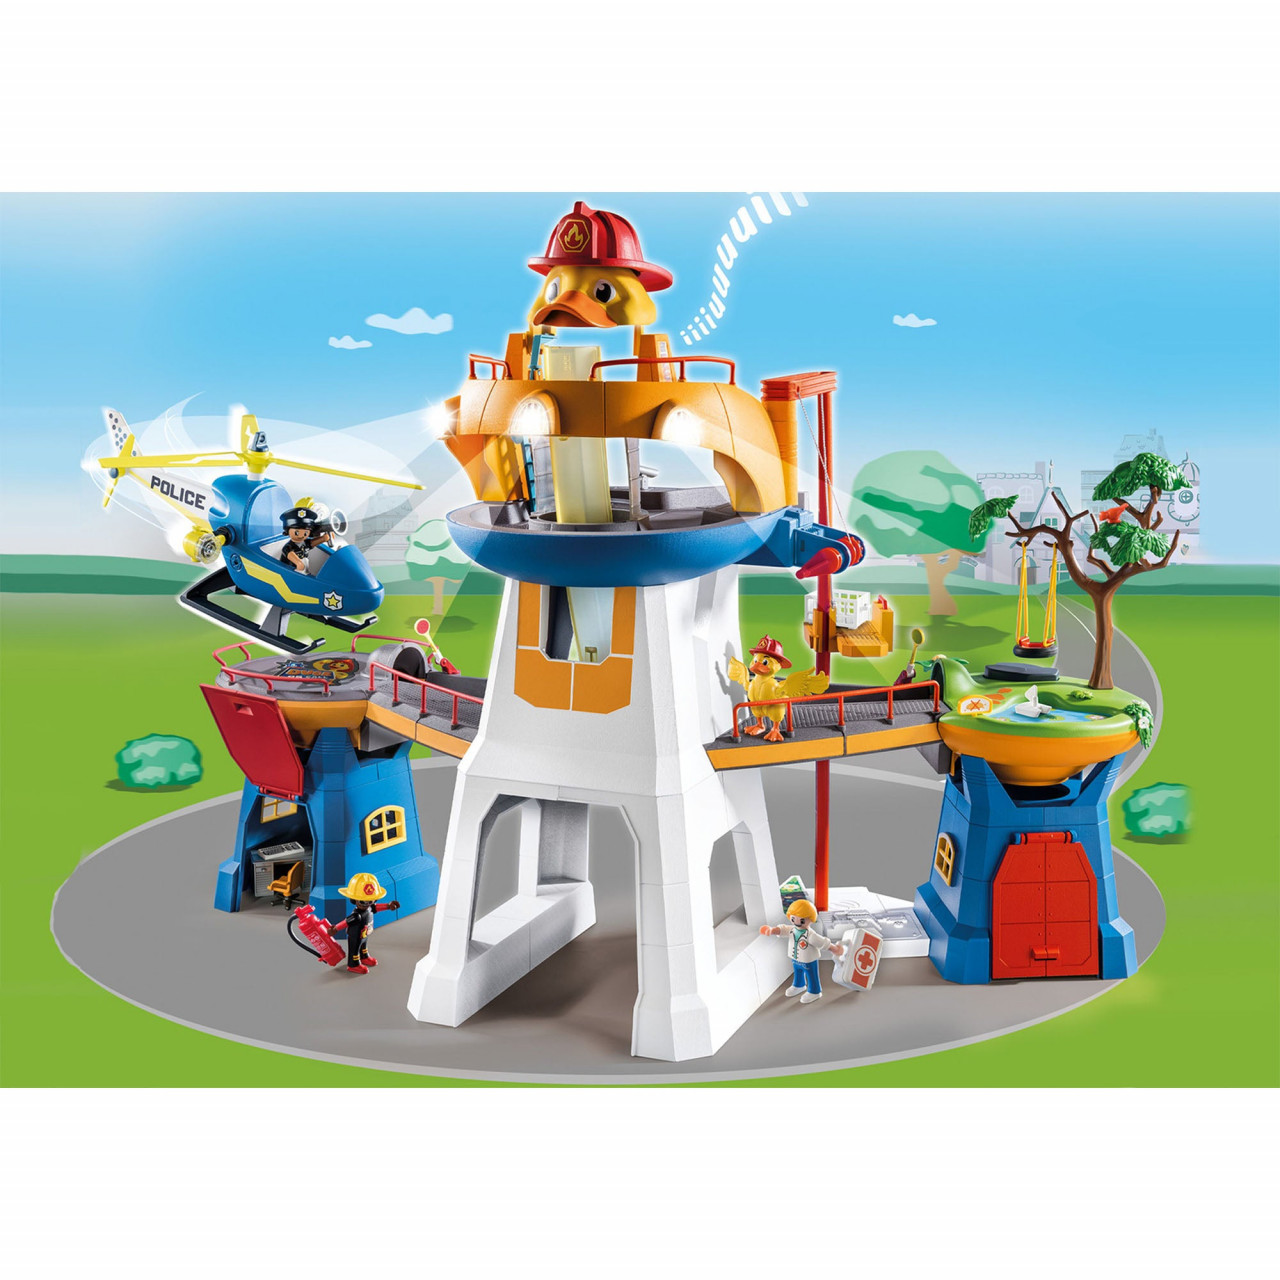 Playmobil – D.O.C – Sediul Eroilor Jucarii copii